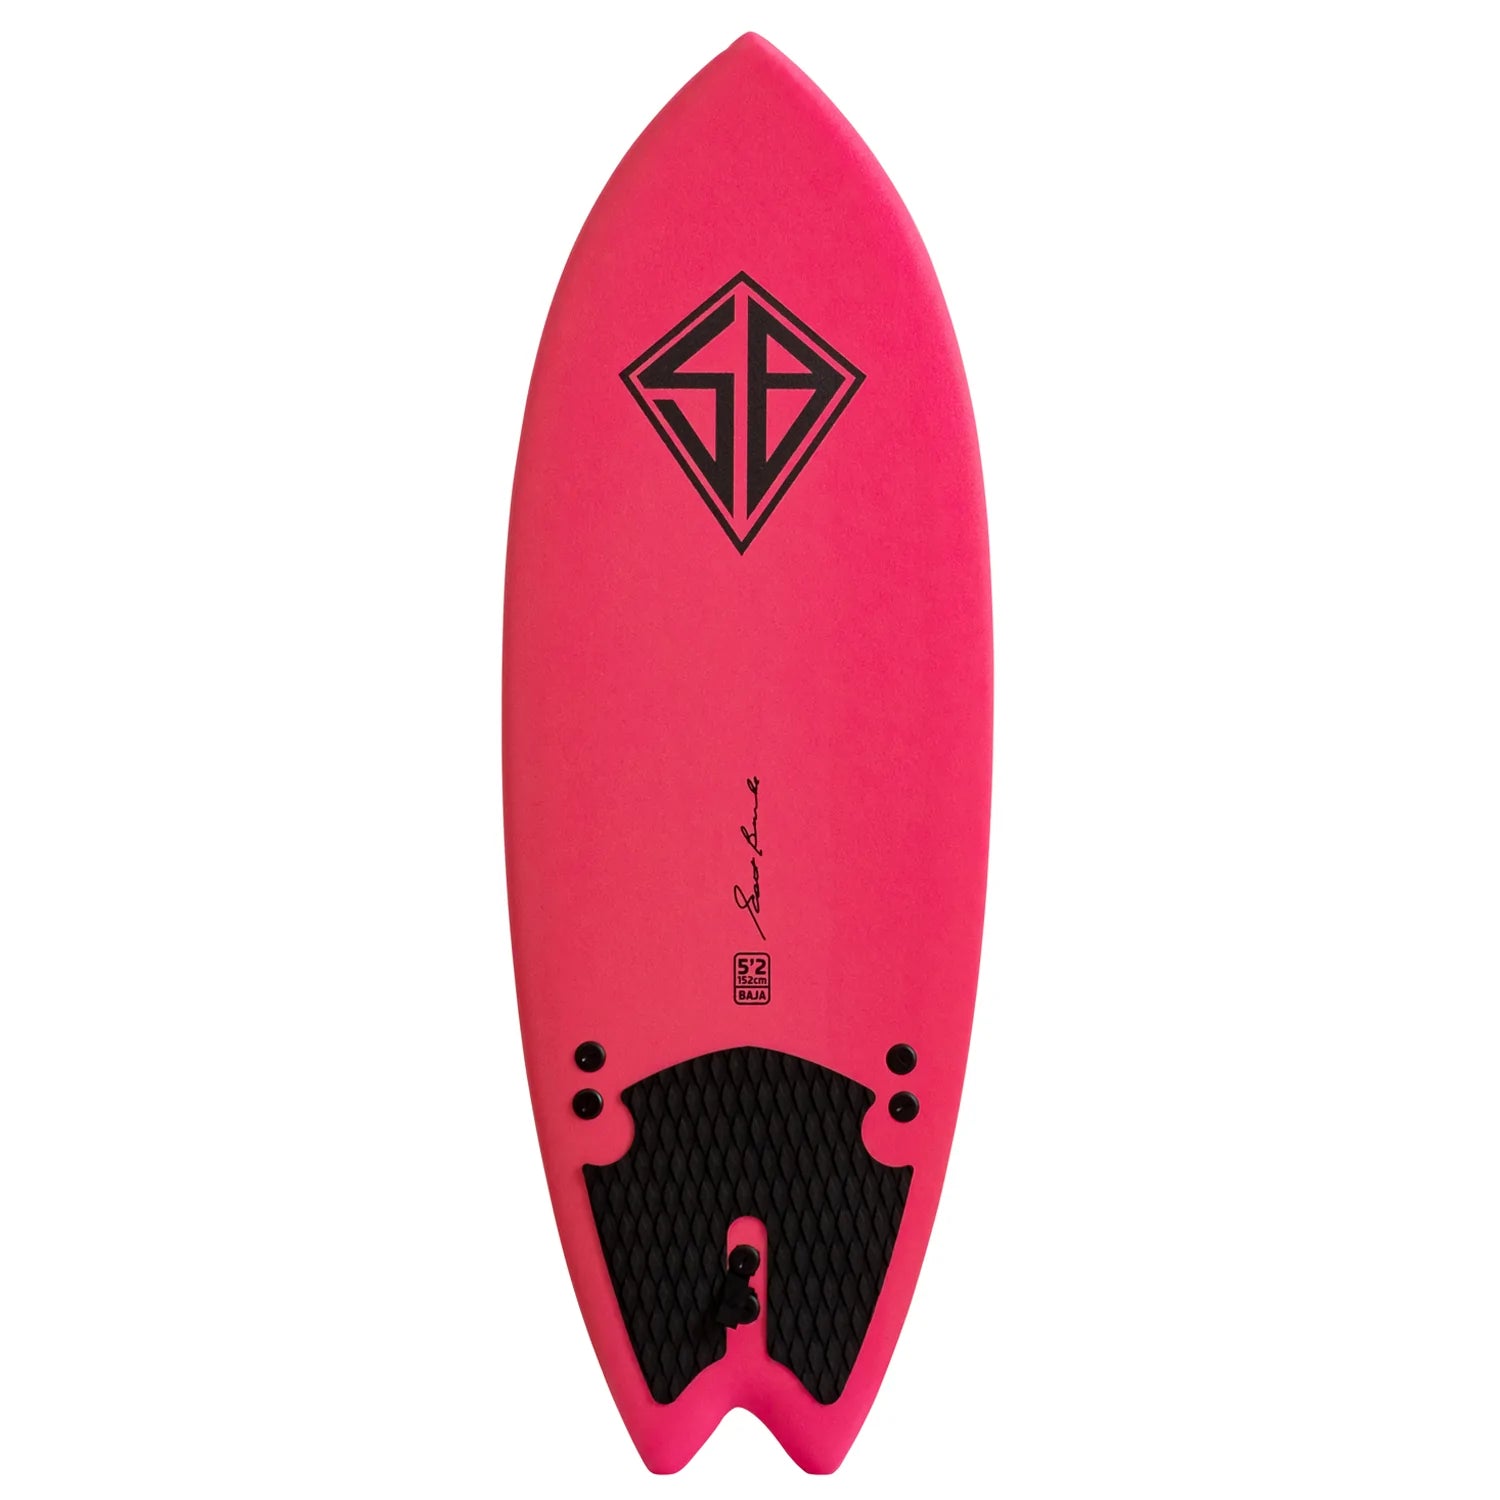 CBC - Foam Surfboard - Softboard - 5'2 Baja Fish - Pink / Rainbow Slick